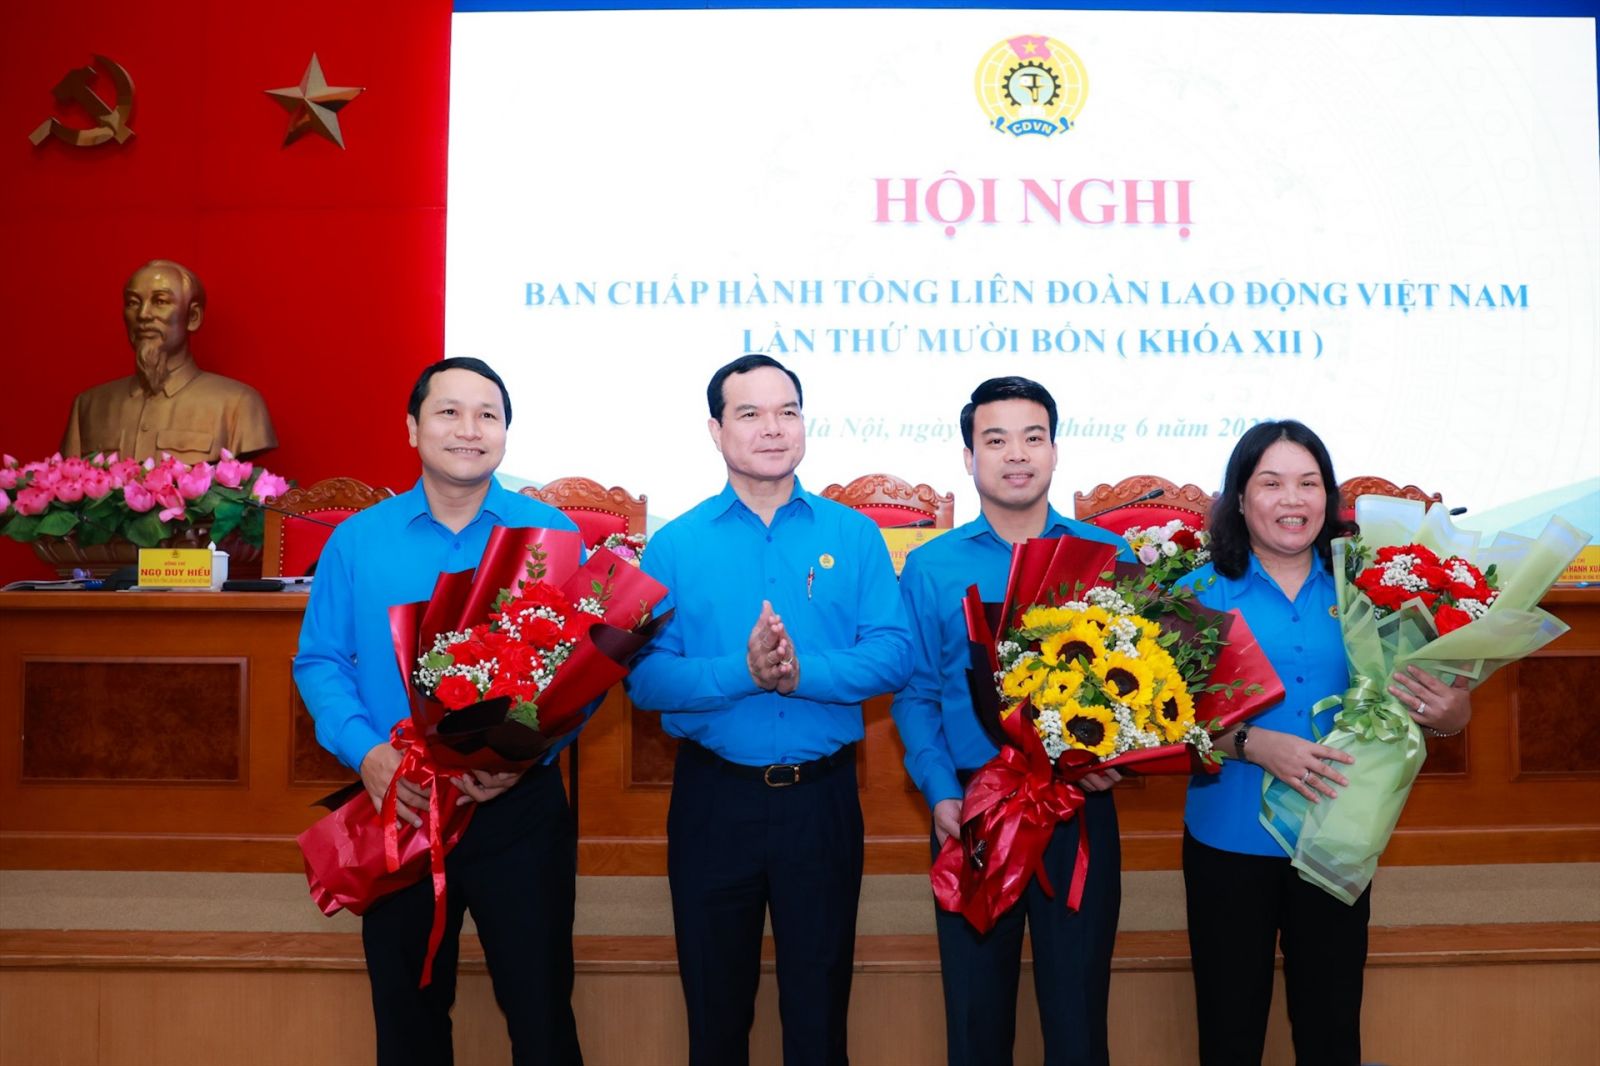 Chủ tịch Lê Quang Toản được bầu vào Ban Chấp hành Tổng Liên đoàn Lao động Việt Nam